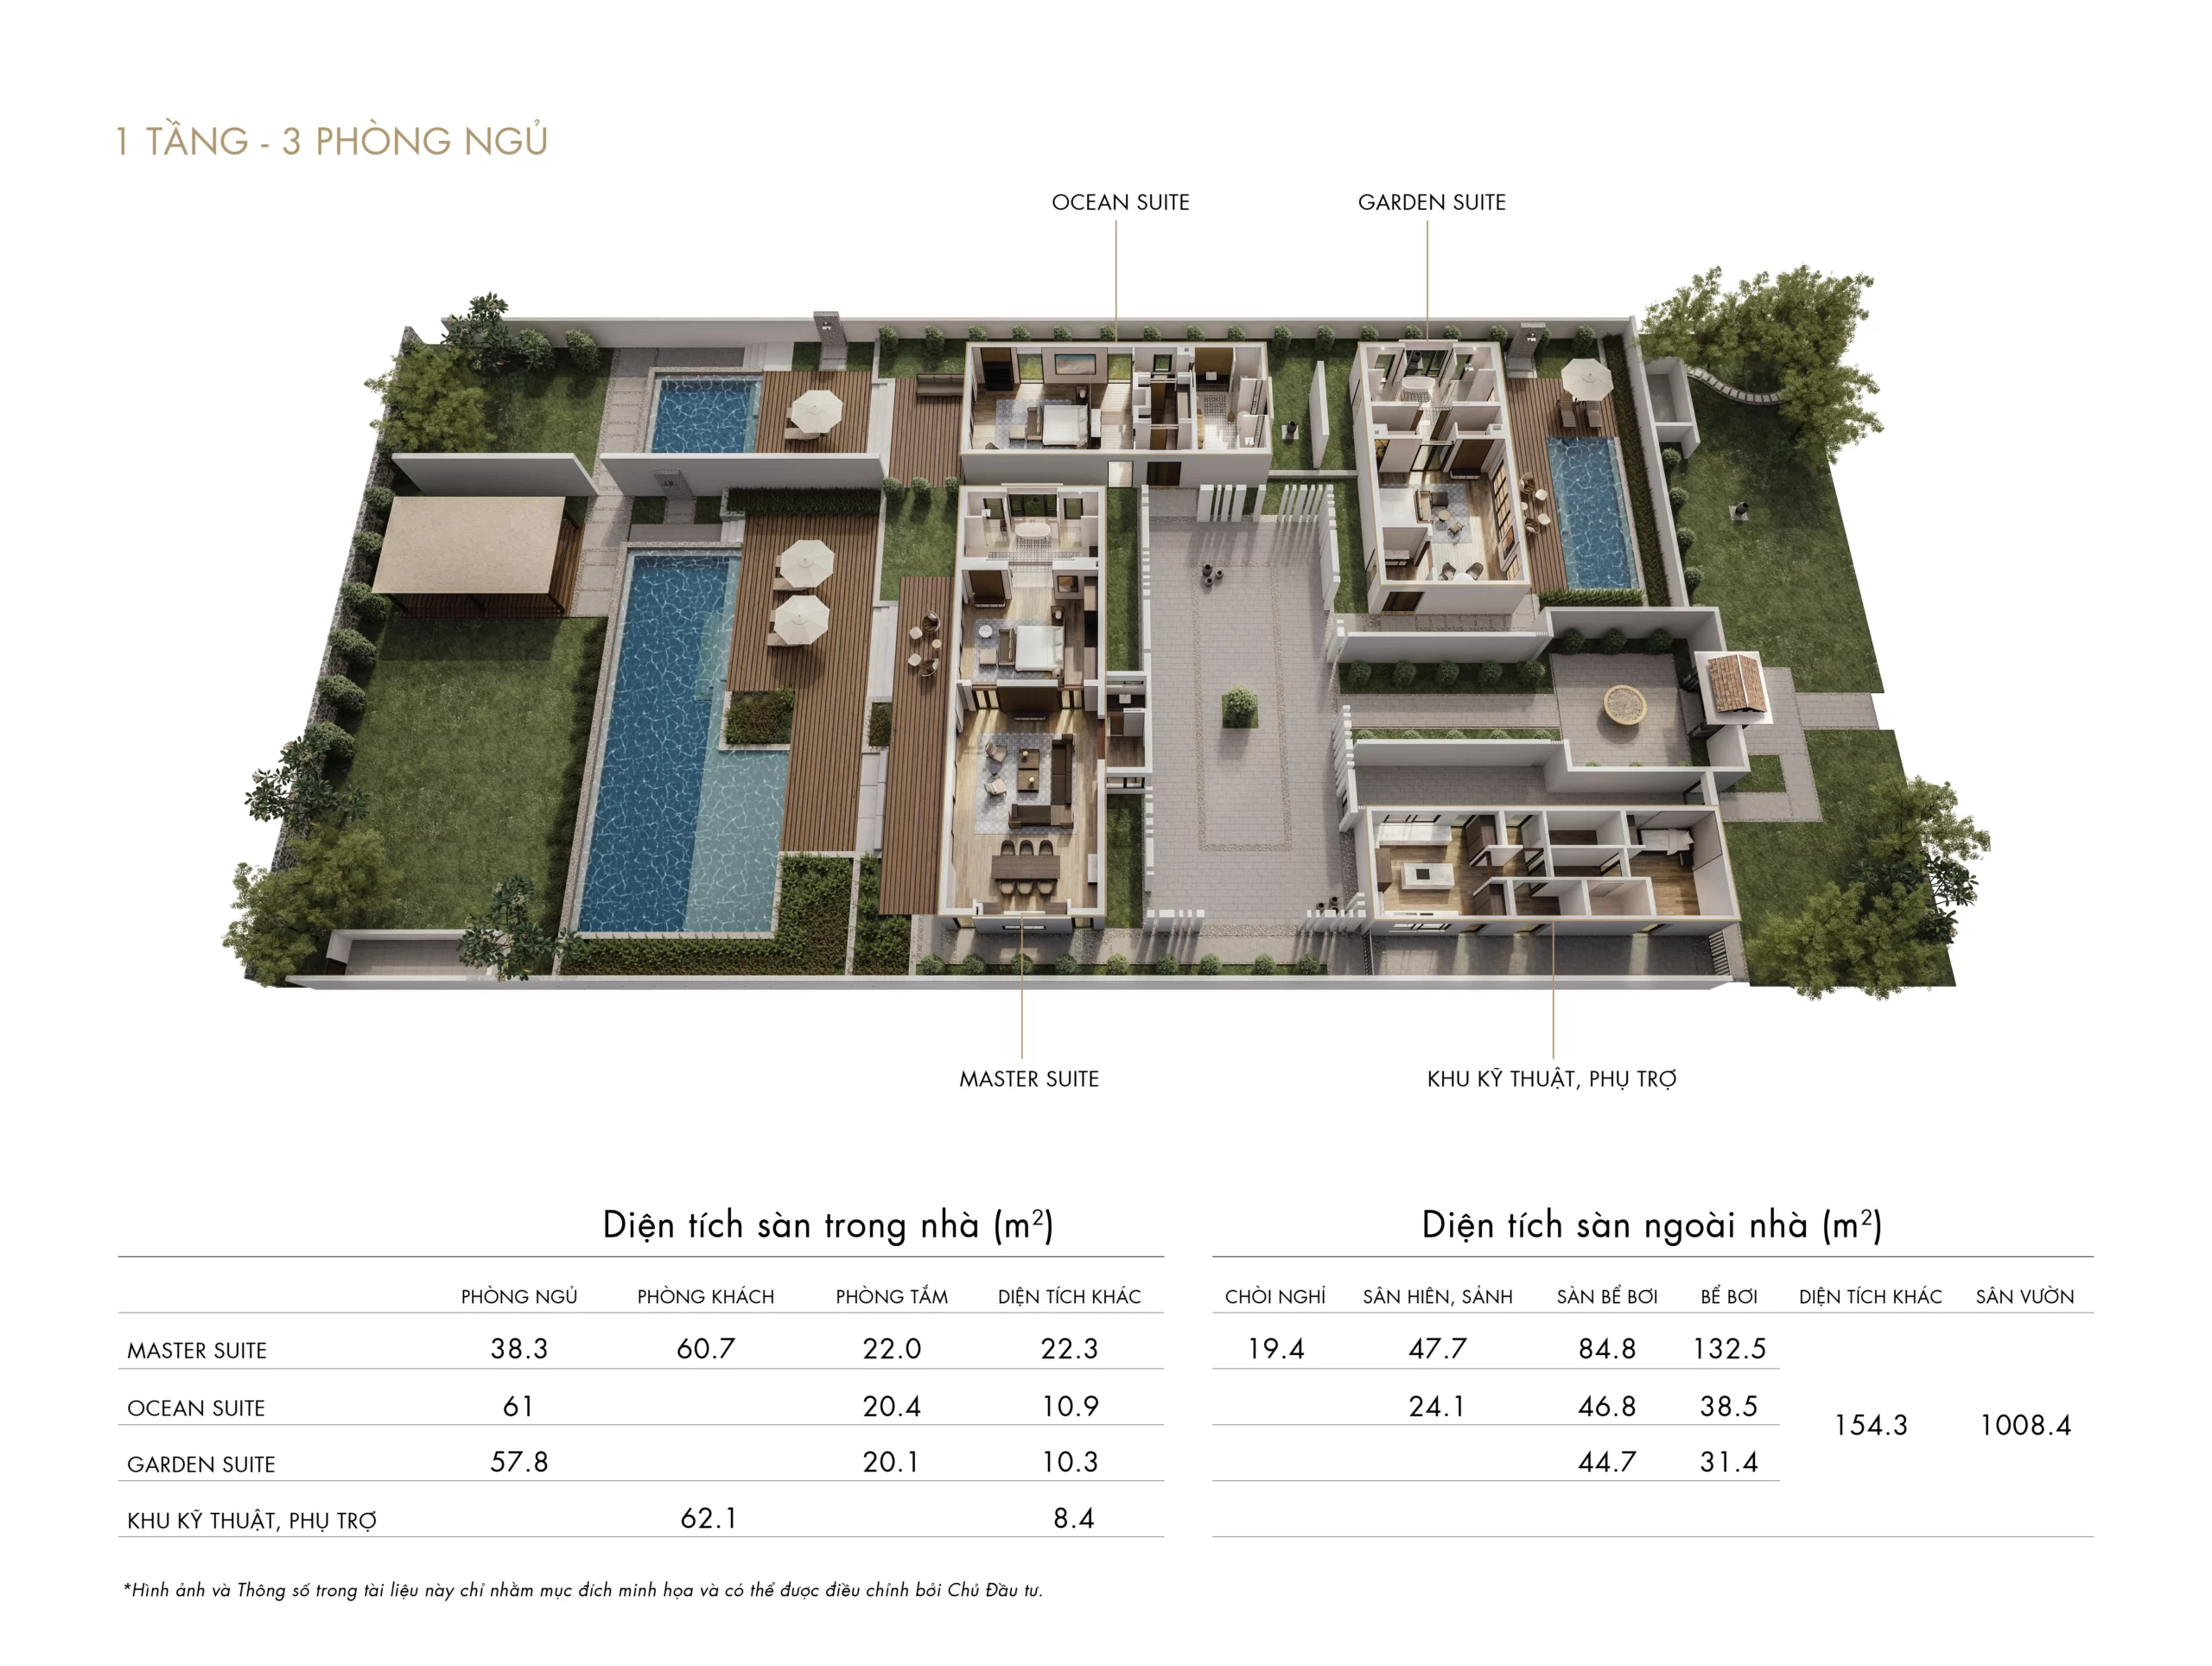 beach villa 3pn park hyatt phú quốc residences layout